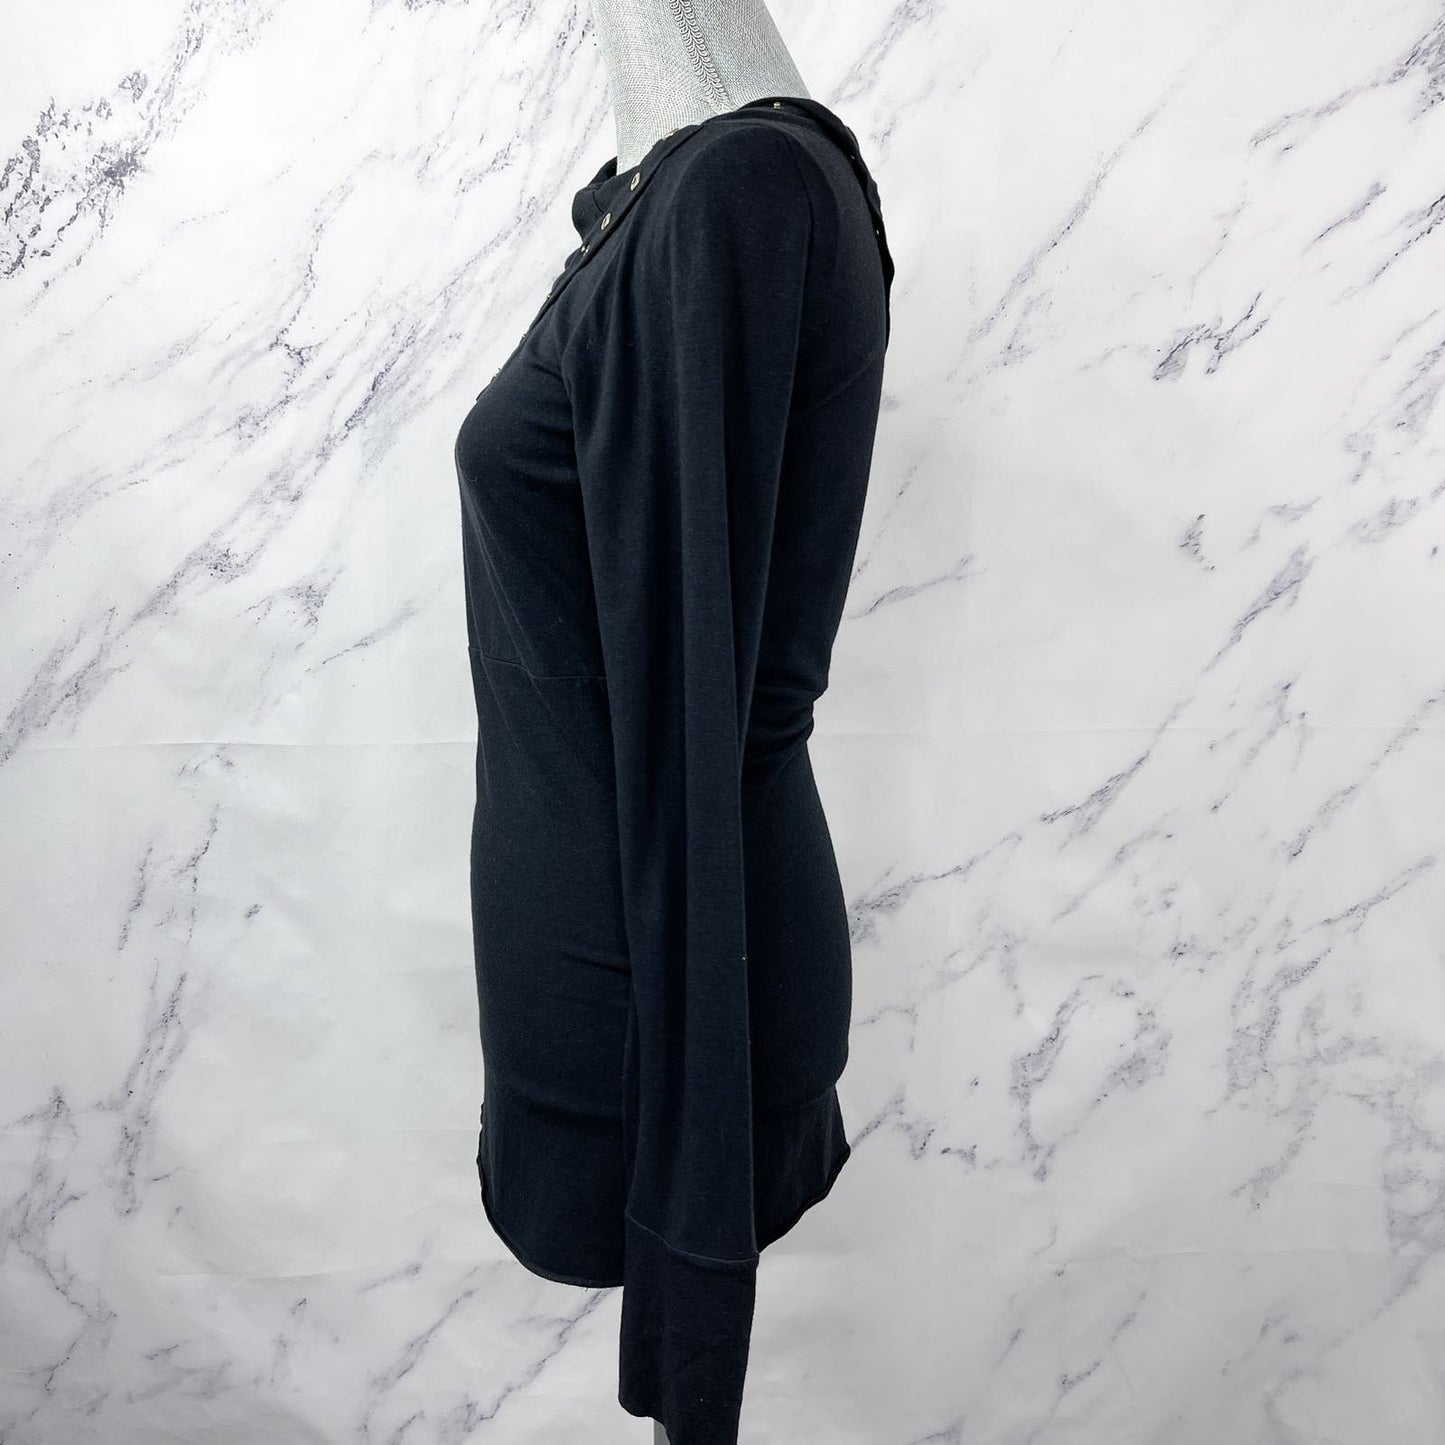 Diane von Furstenberg | Black Long Sleeve Top | M